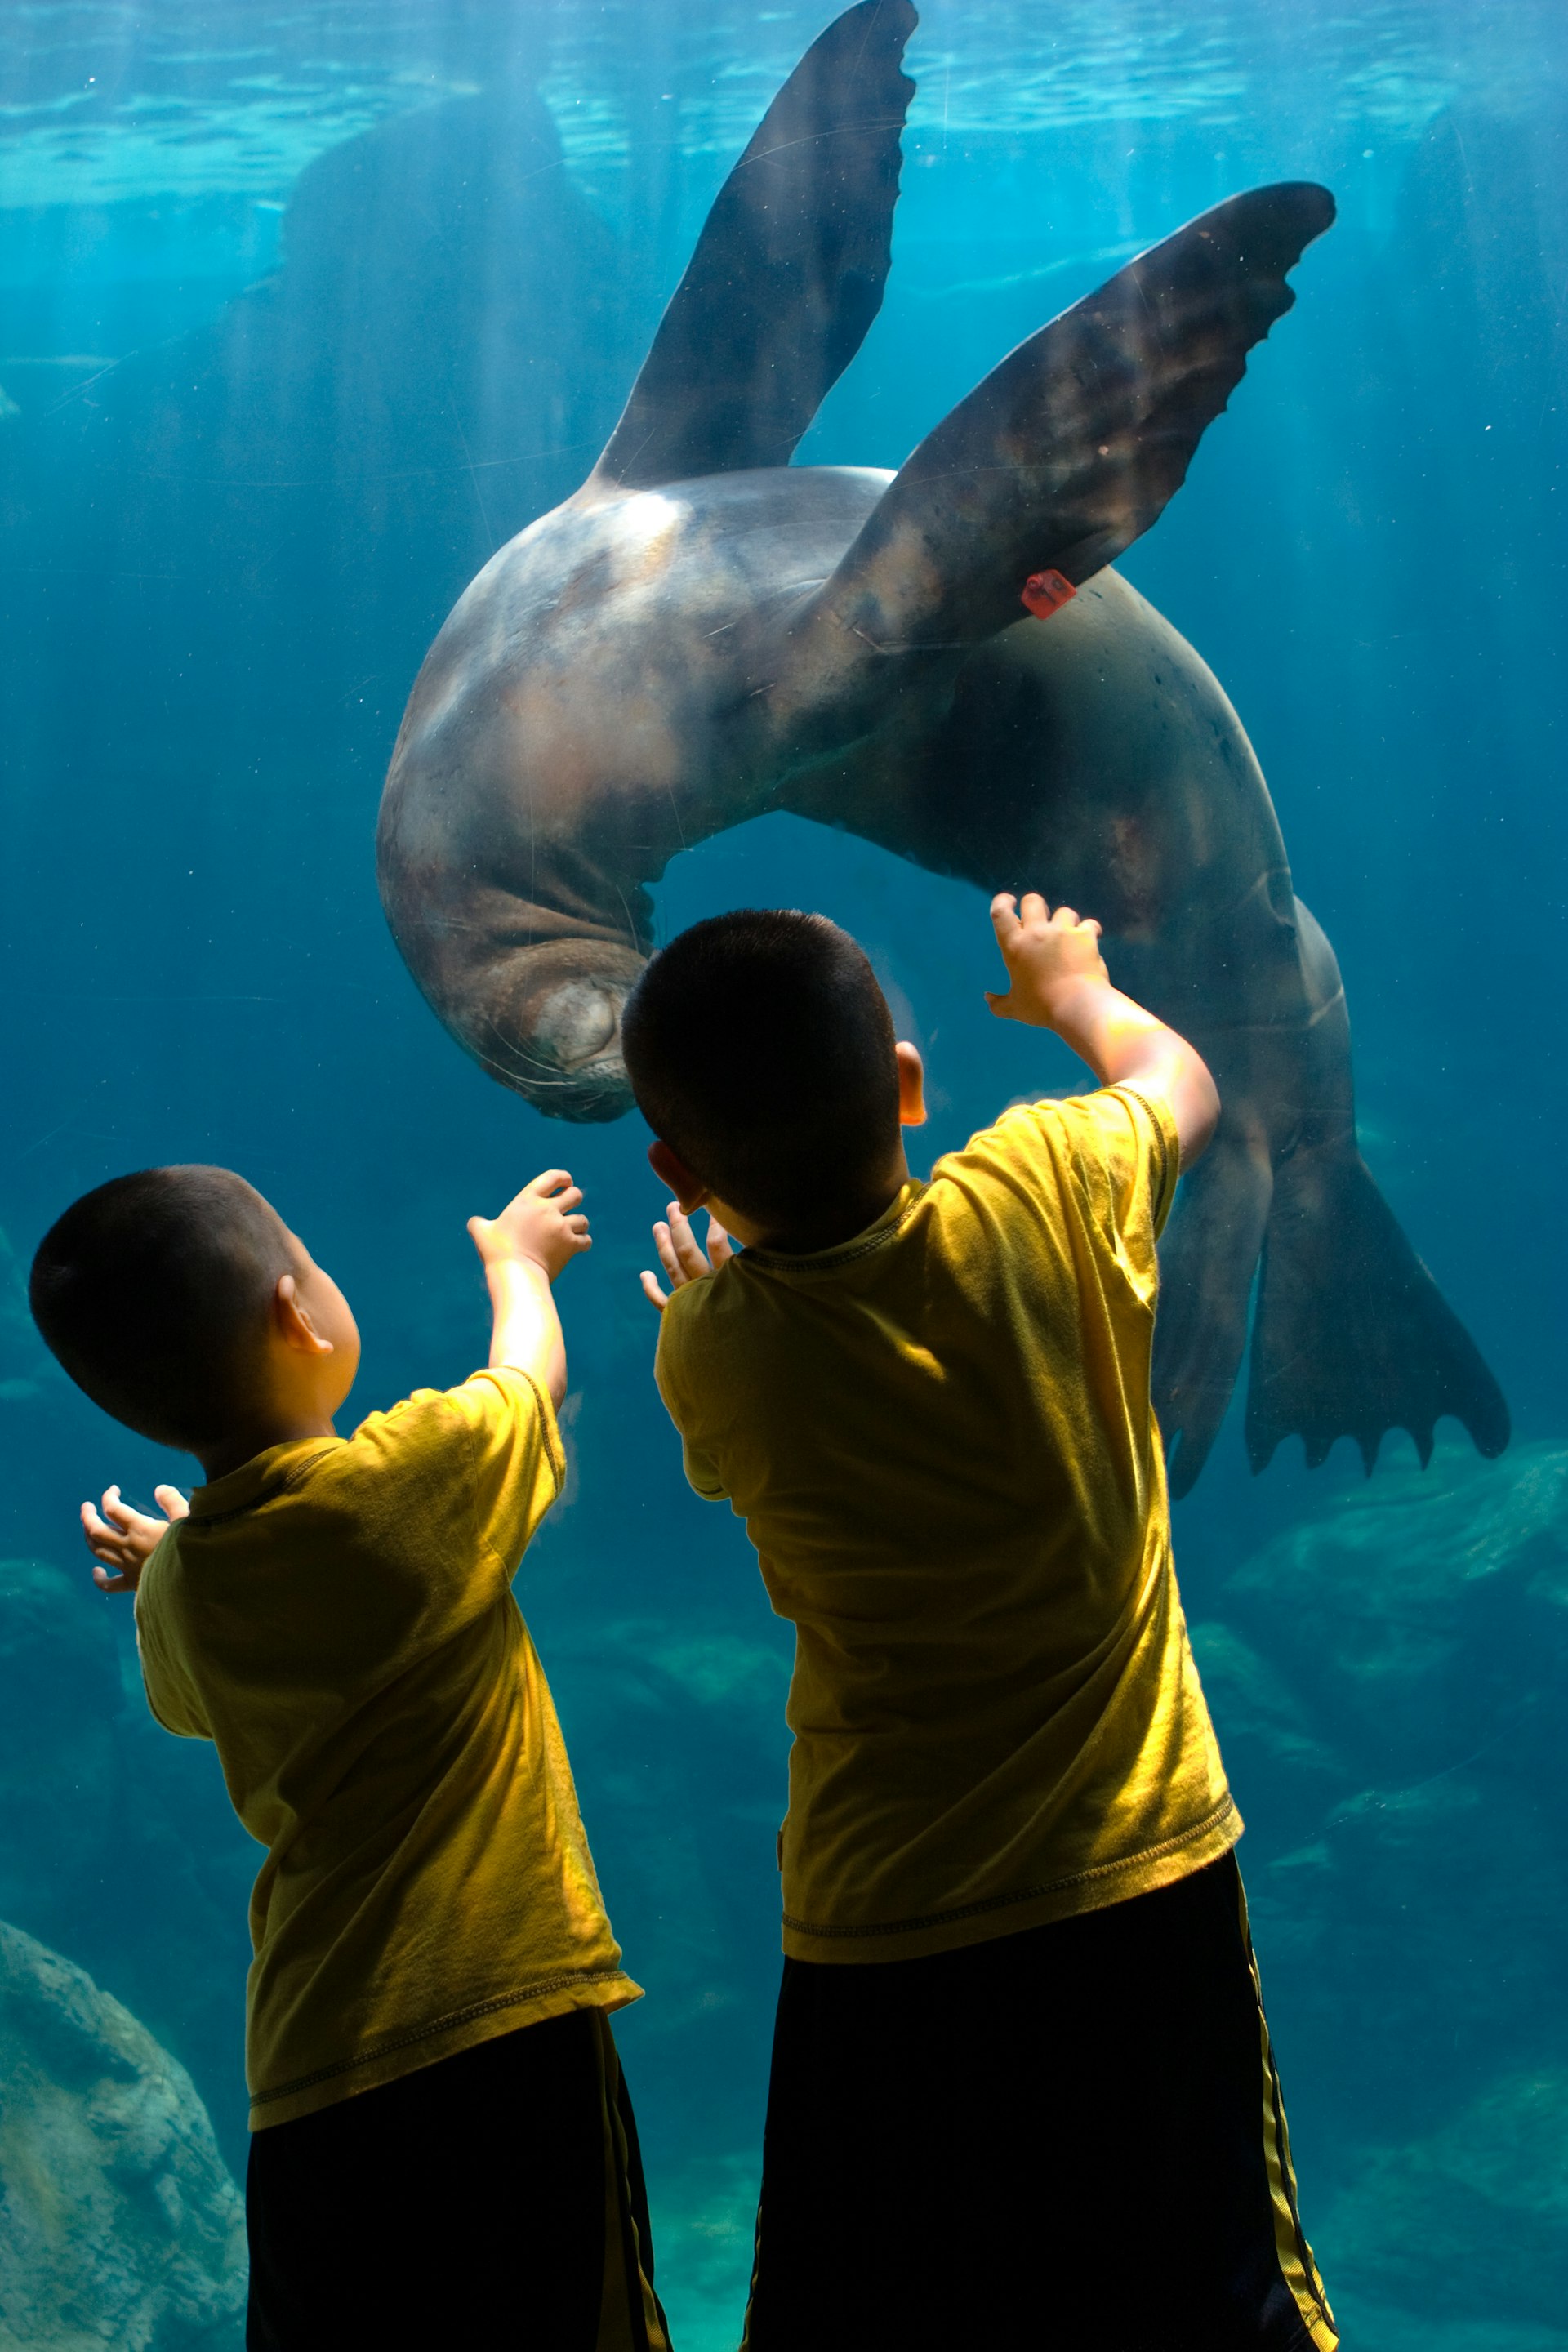 Children play with a sea lion at an Aquarium